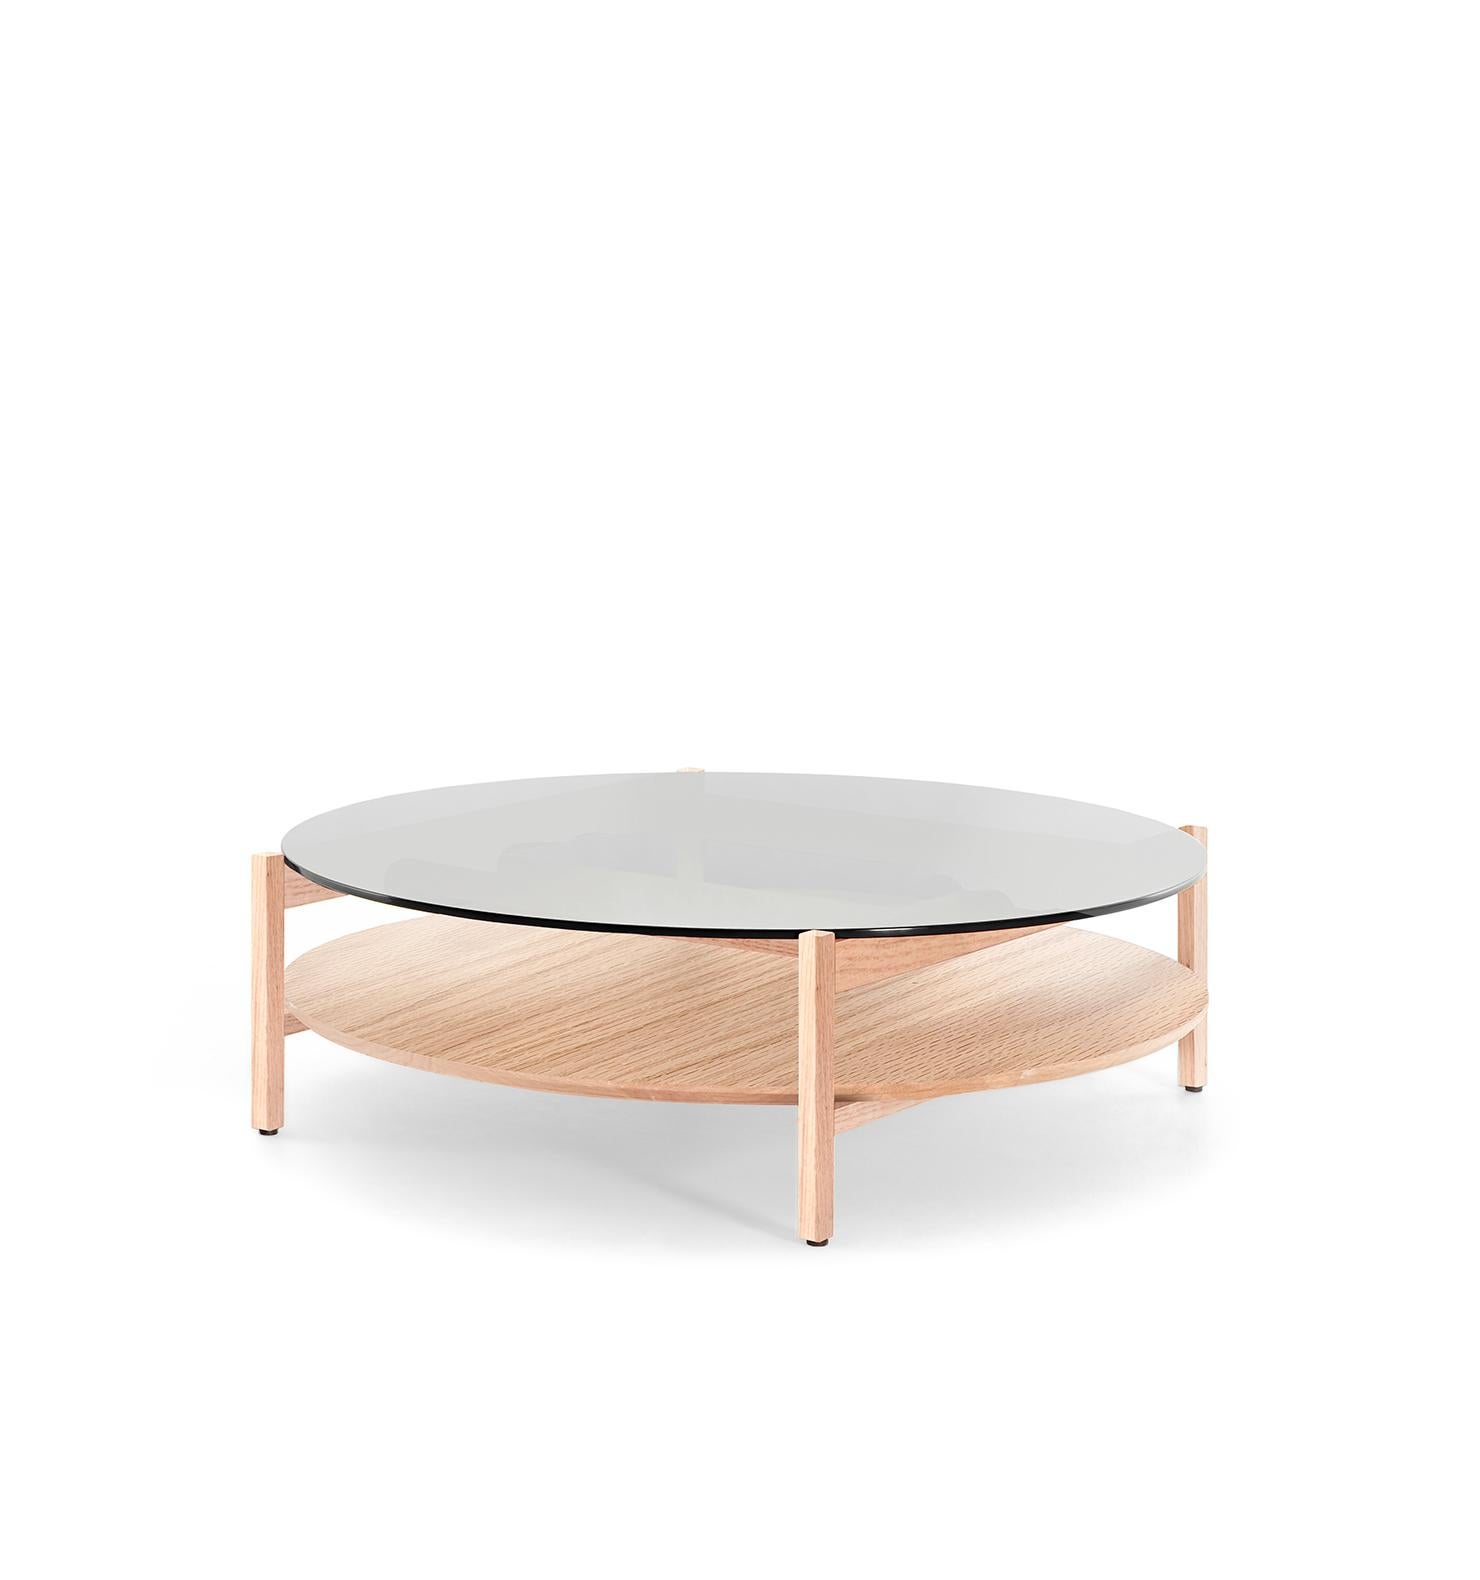 
Voici la Mesa de Centro DEDO, une table basse contemporaine mexicaine conçue par Emiliano Molina pour CUCHARA. Cette pièce exceptionnelle présente deux surfaces composées de matériaux différents, reposant sur un cadre élégant et élancé. La Mesa de